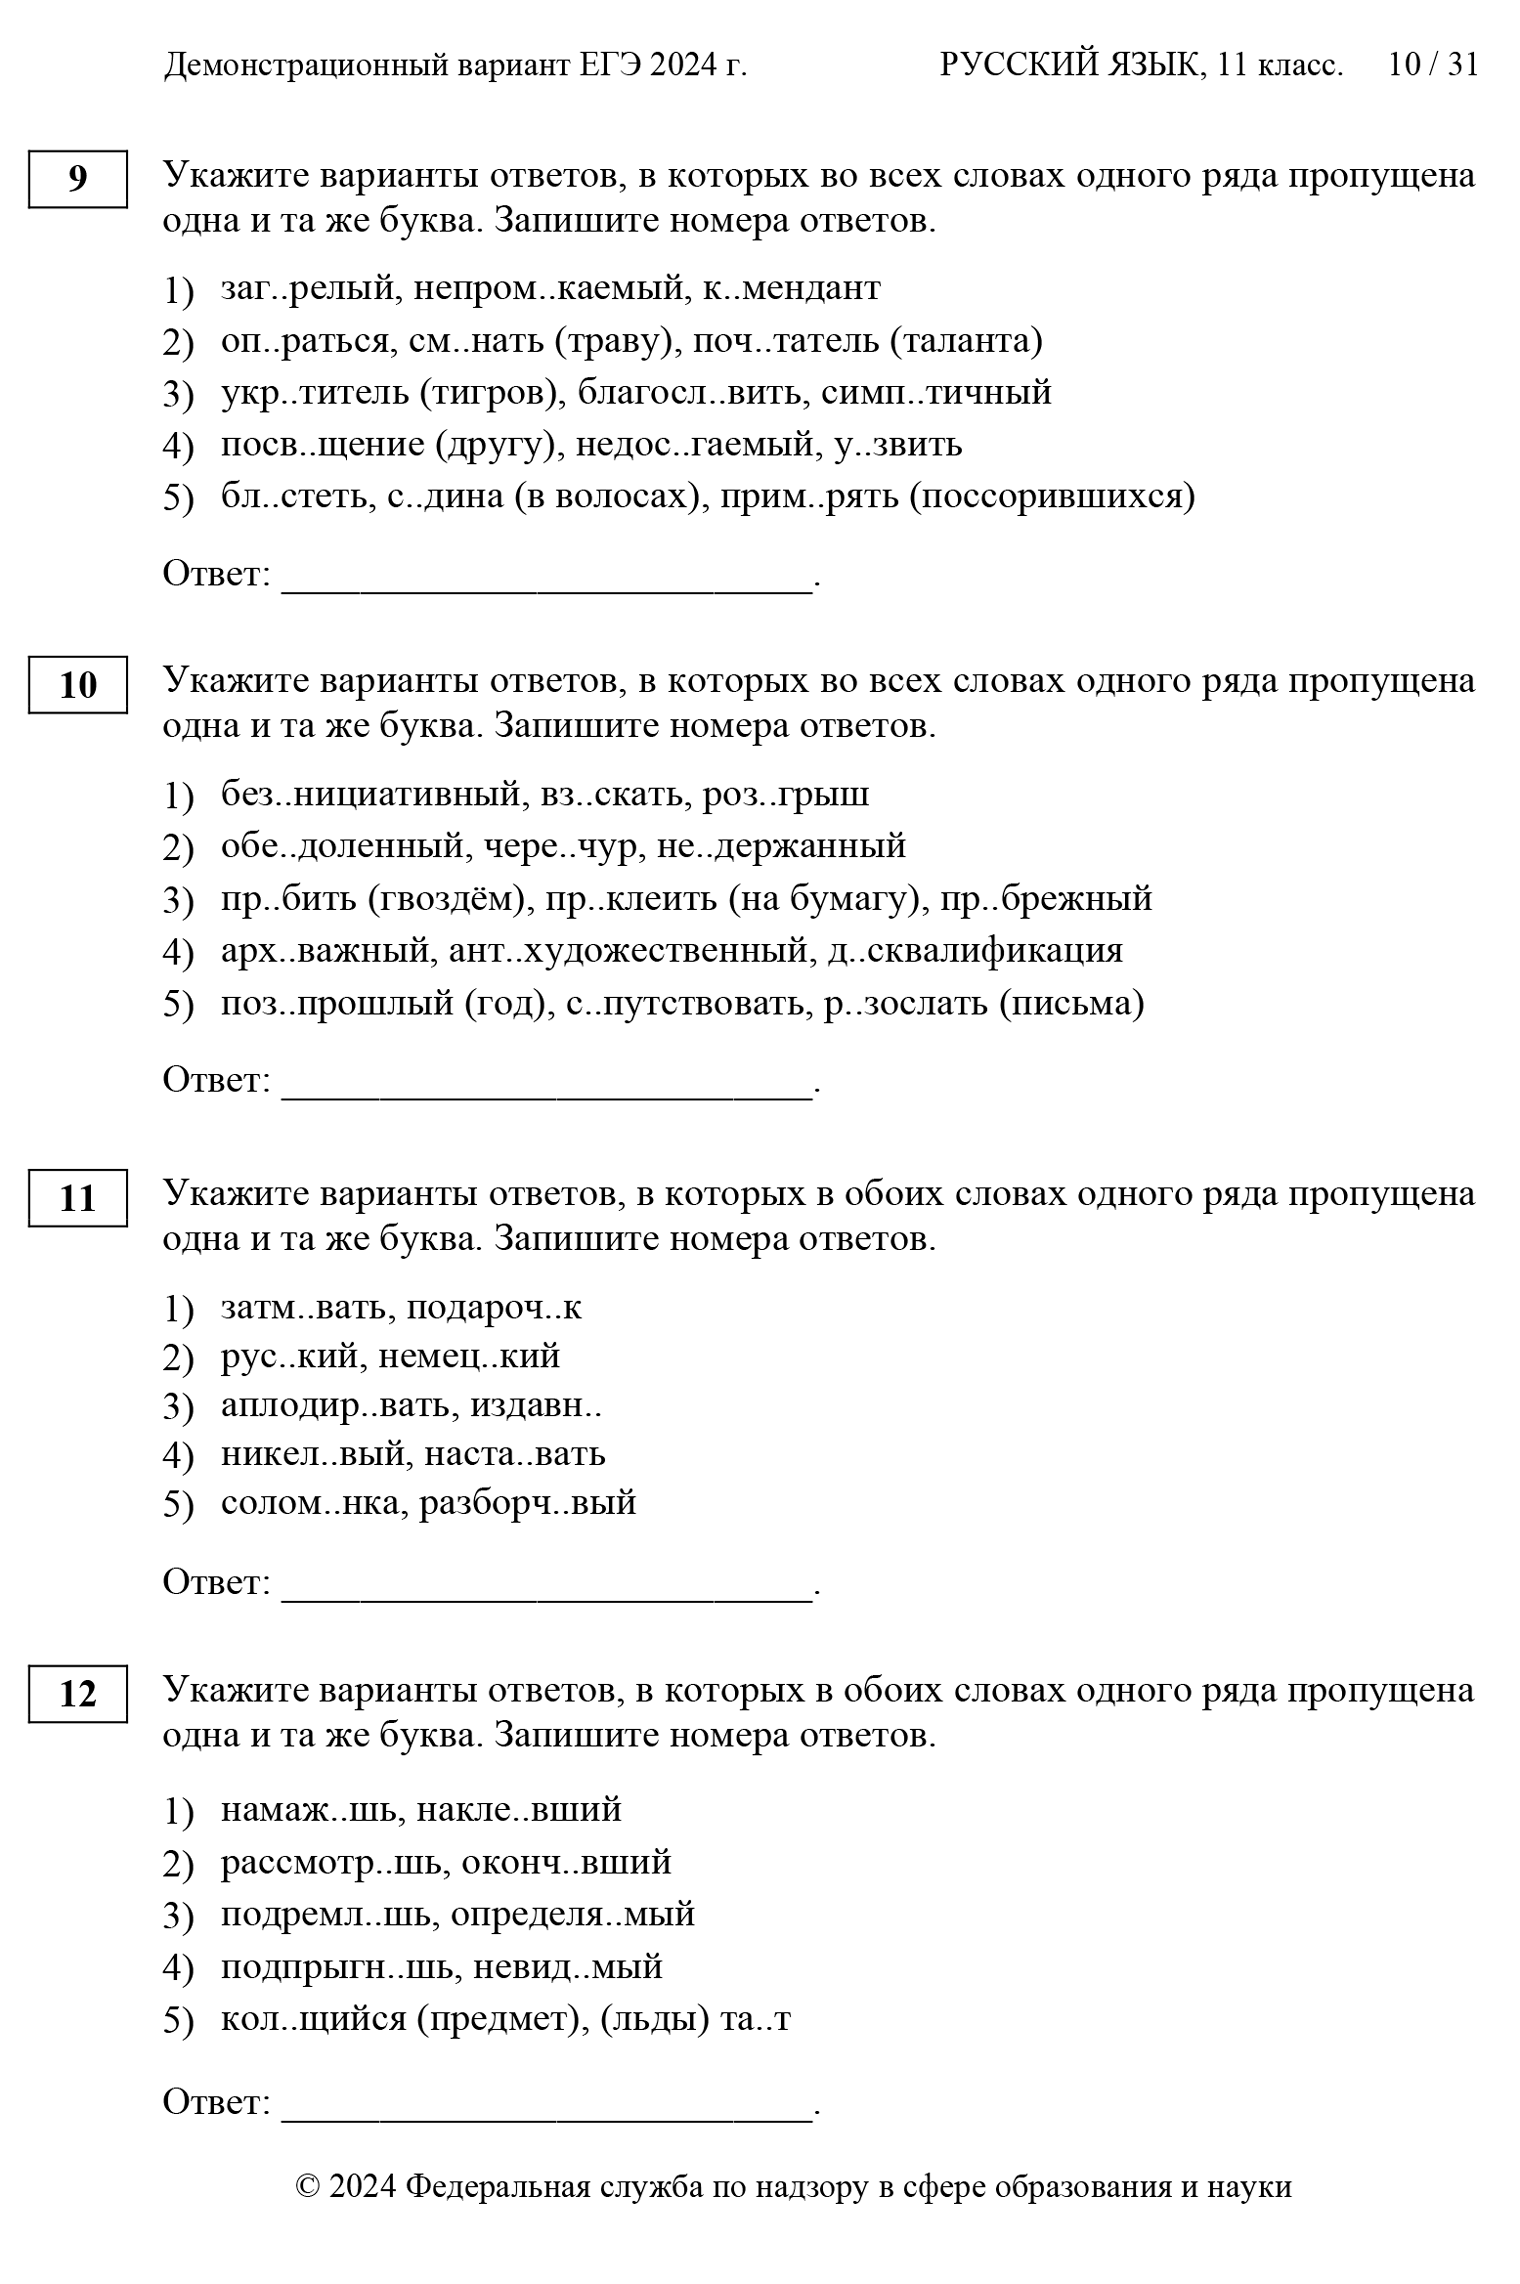 Тесты, проверяющие, насколько хорошо сдающий знает орфографию. Источник: fipi.ru